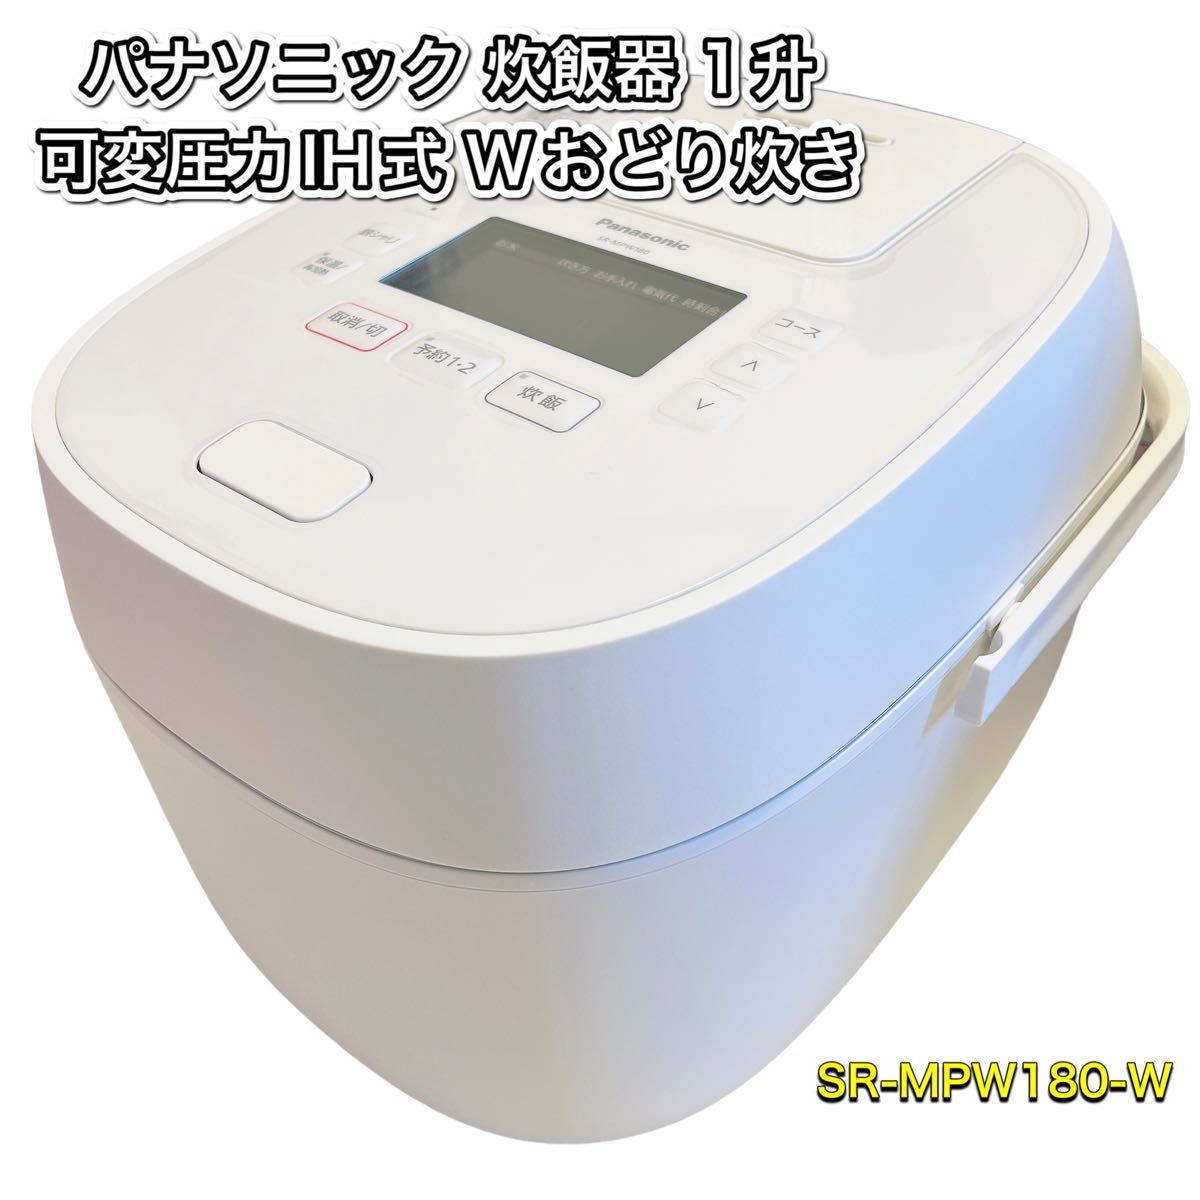 パナソニック 炊飯器 1升 可変圧力IH式 Wおどり炊き SR-MPW180-W